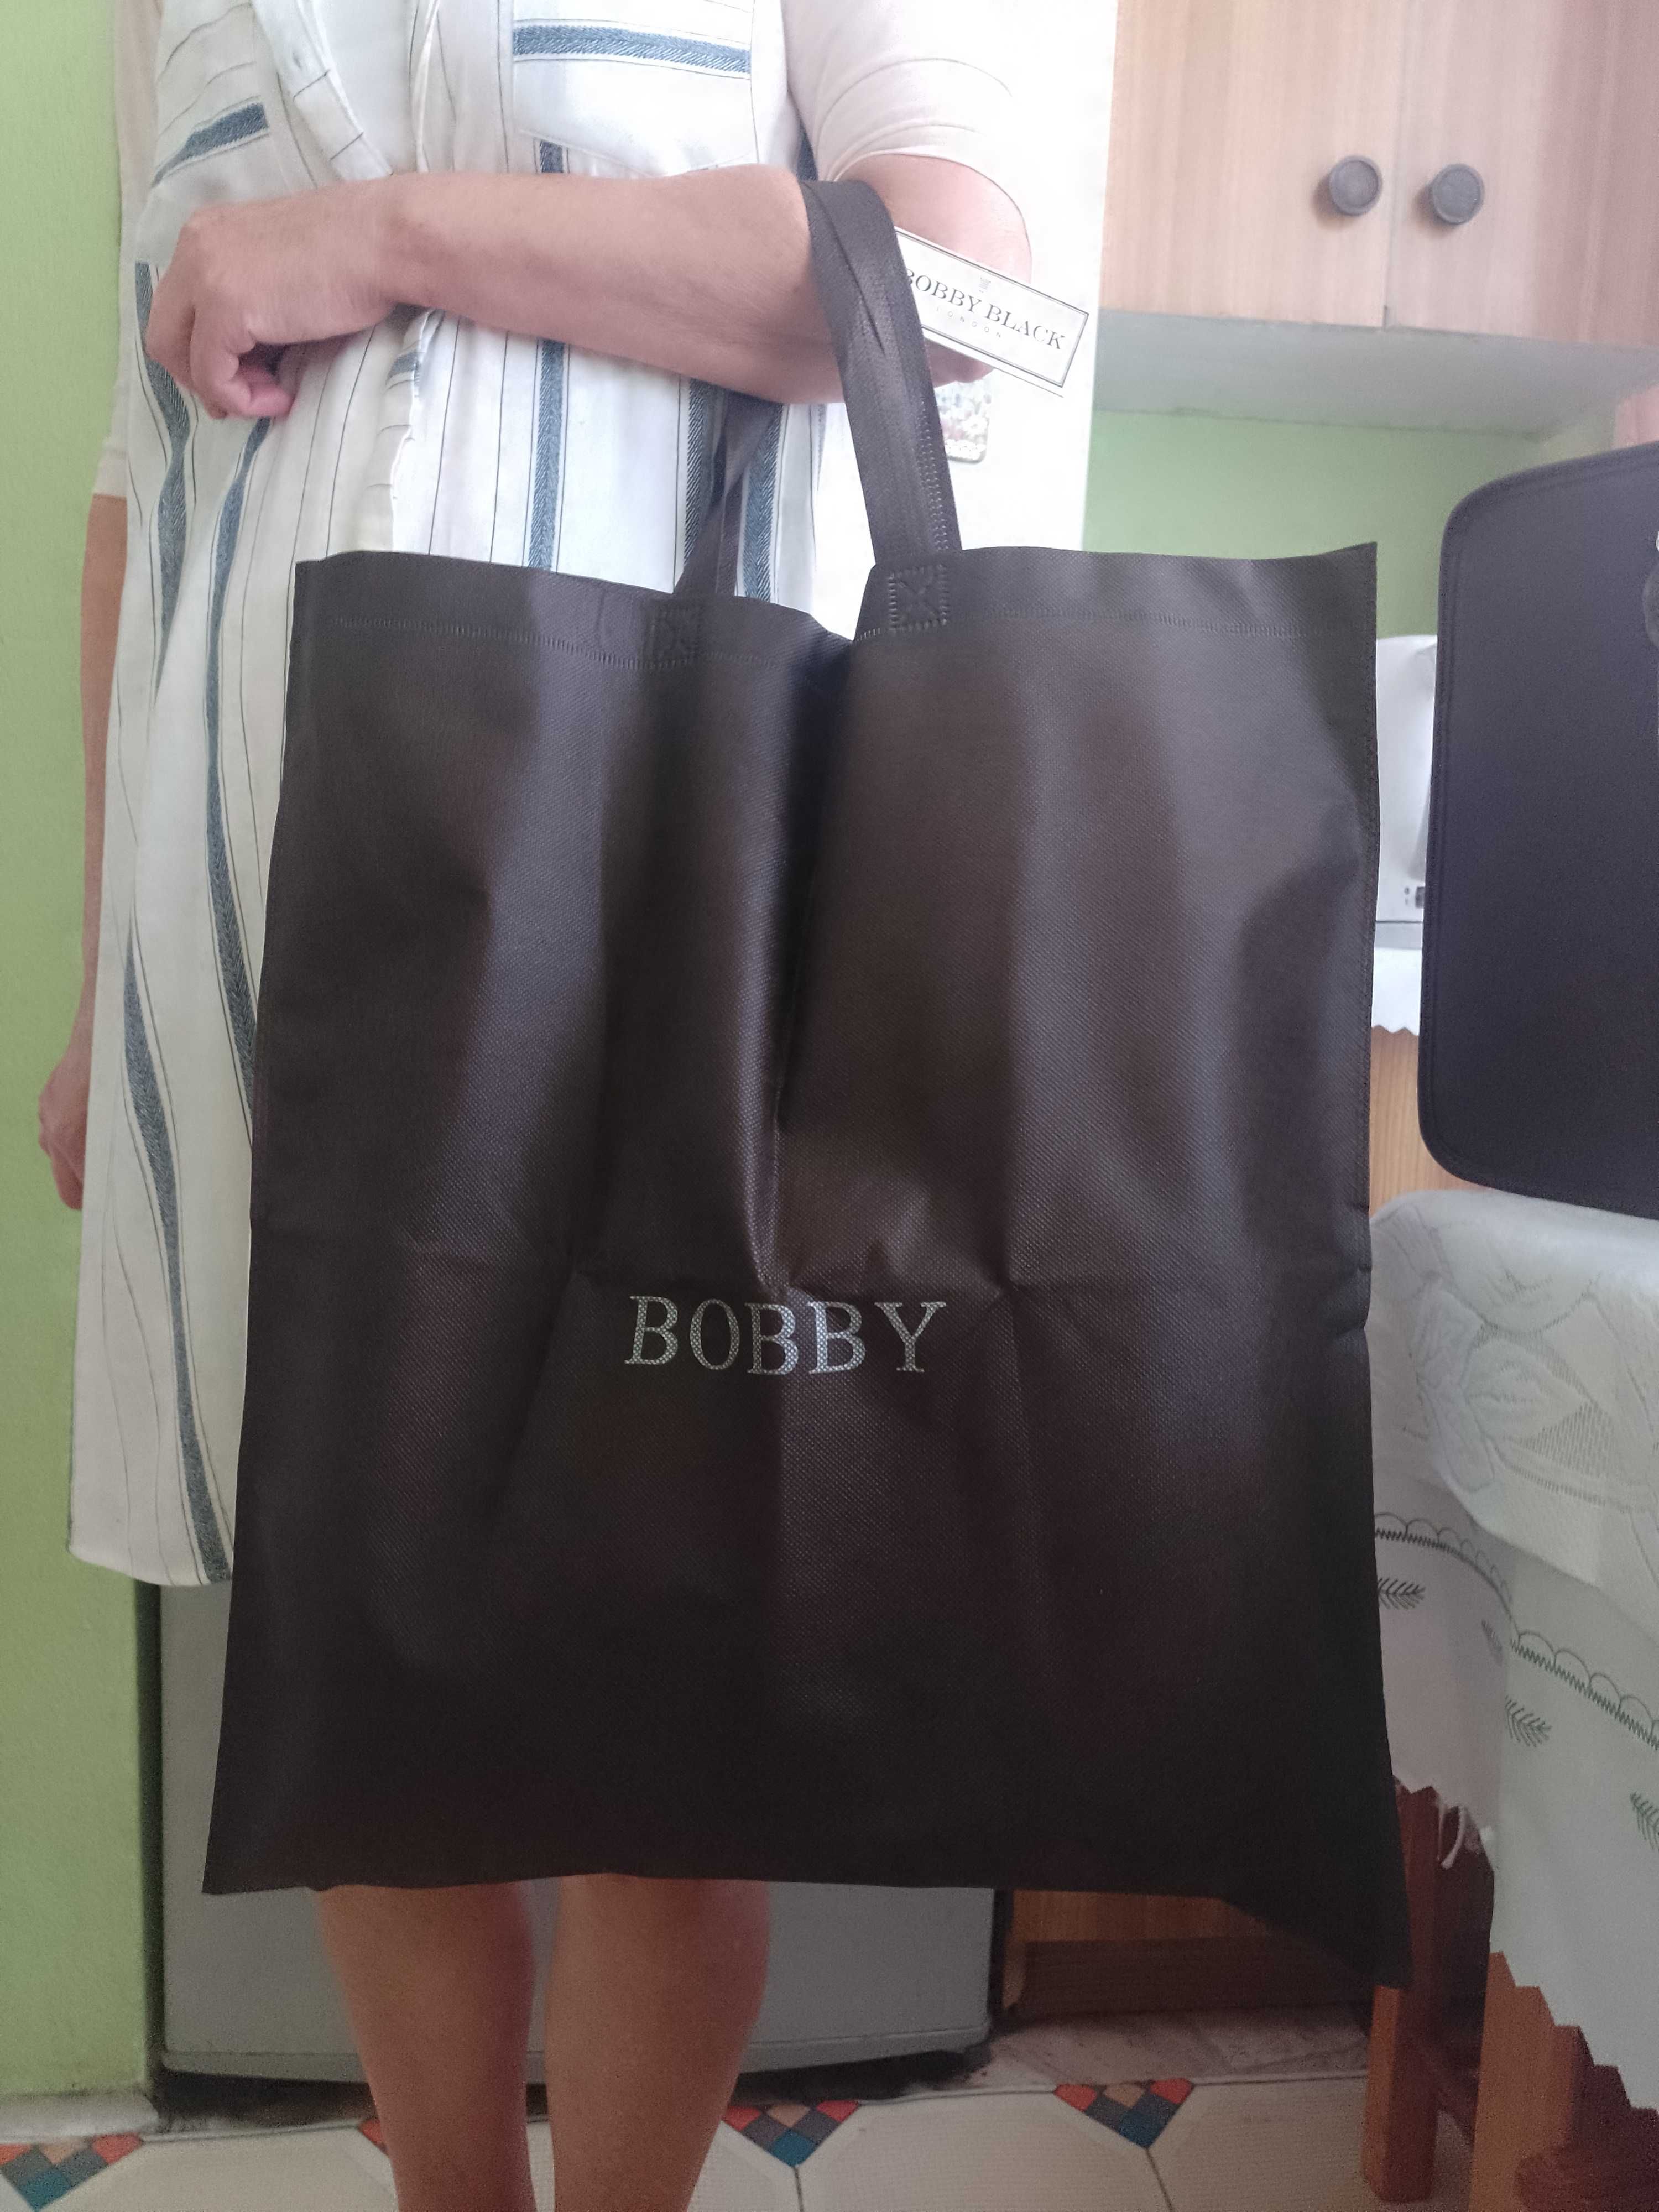 BOBBY BLACK London/Ogromna torebka na ramię z Londynu, torba, NOWA